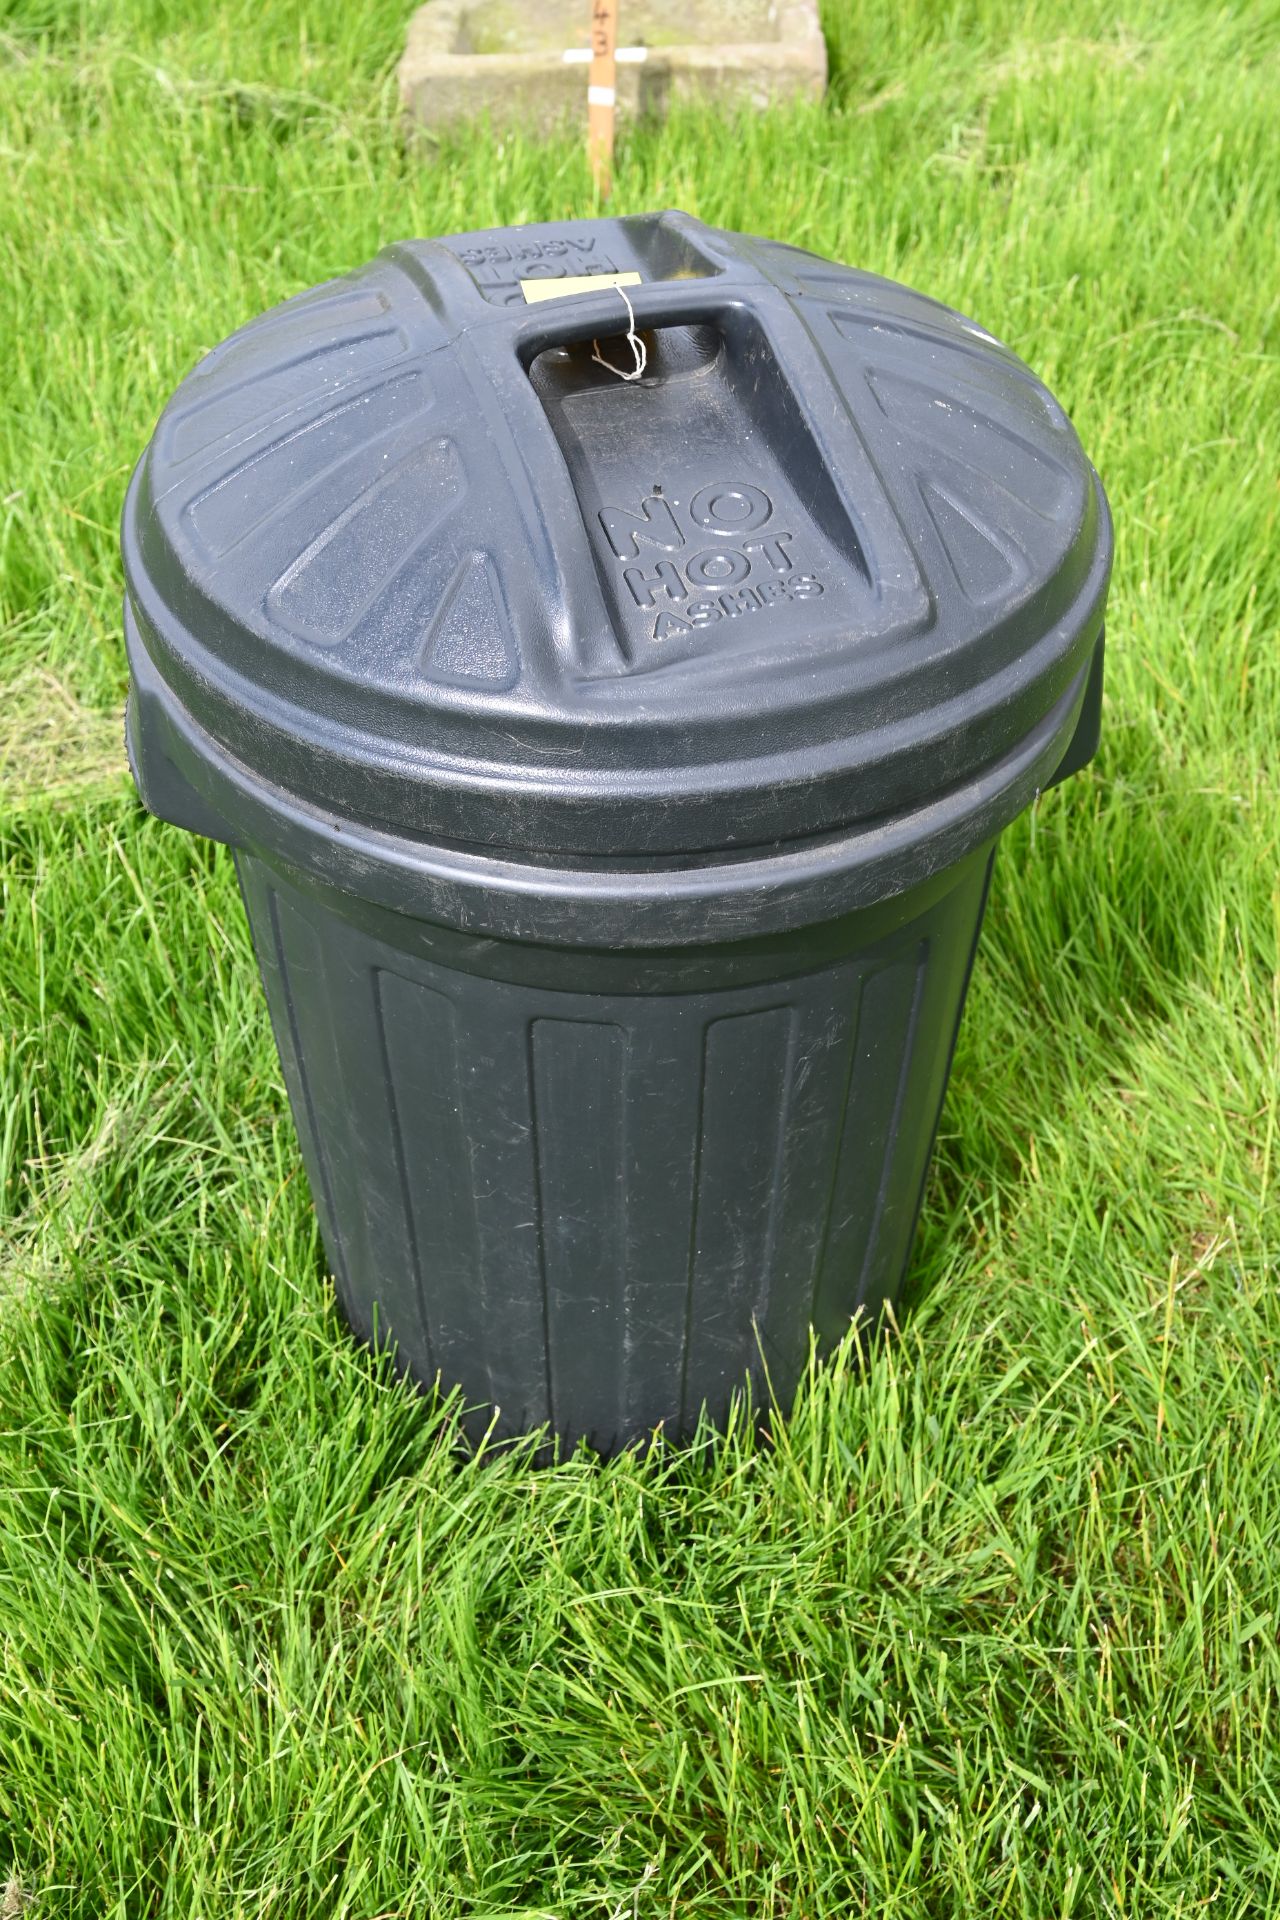 Plasic dustbin full of garden pots - Image 2 of 2